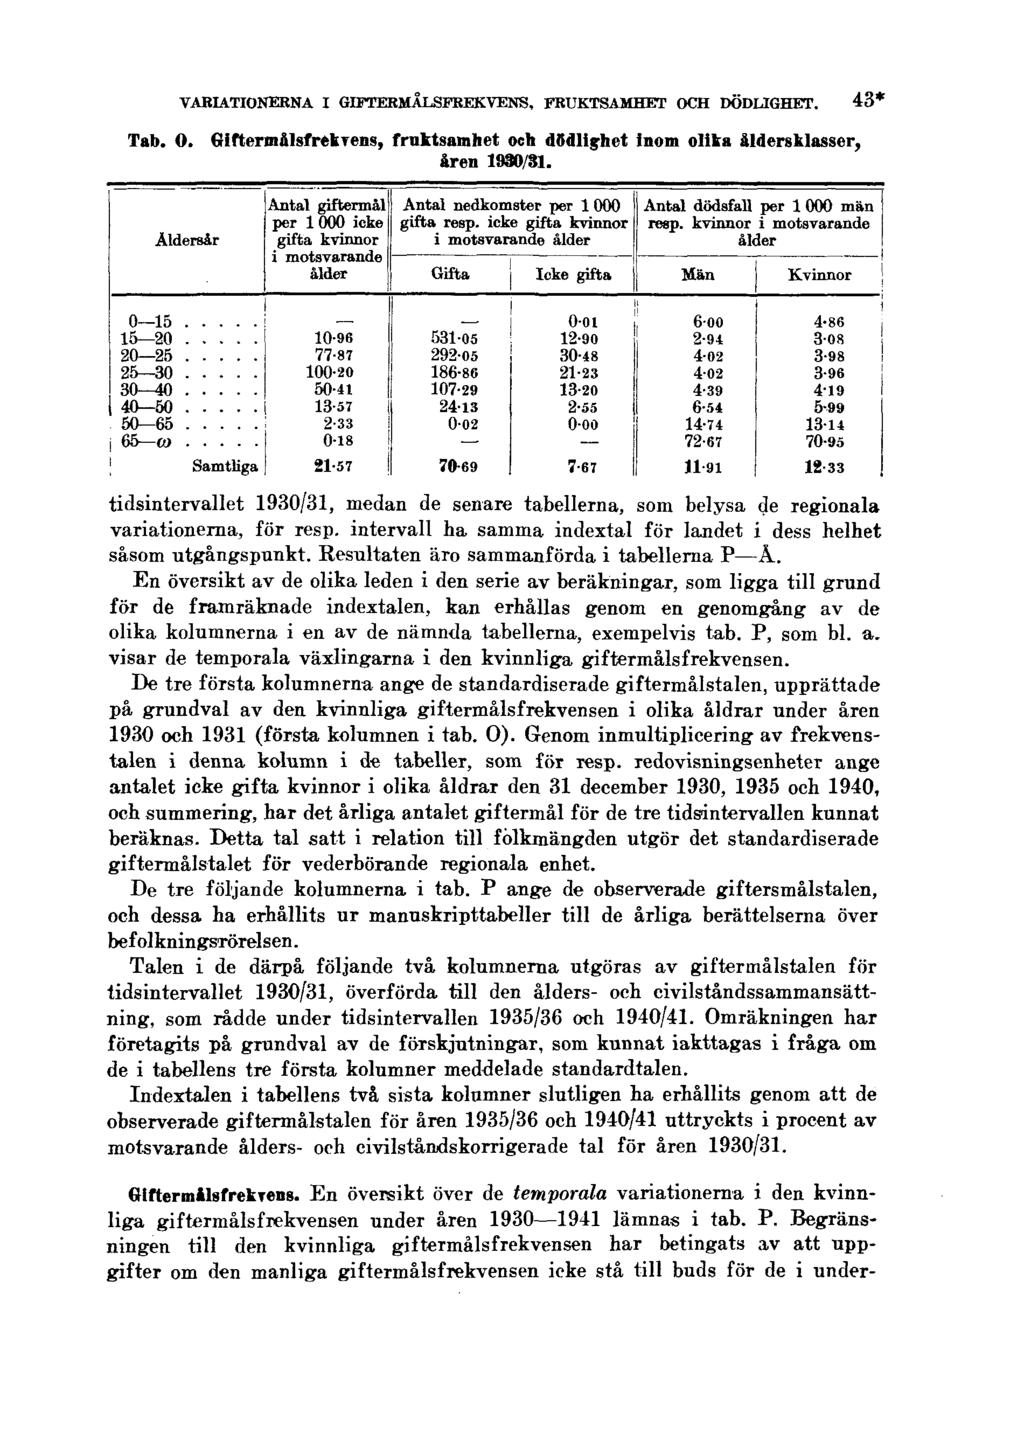 VARIATIONERNA I GIFTERMÅLSFREKVENS, FRUKTSAMHET OCH DÖDLIGHET. Tab. O. Giftermålsfrekvens, fruktsamhet och dödlighet inom olika åldersklasser, åren 1930/31.